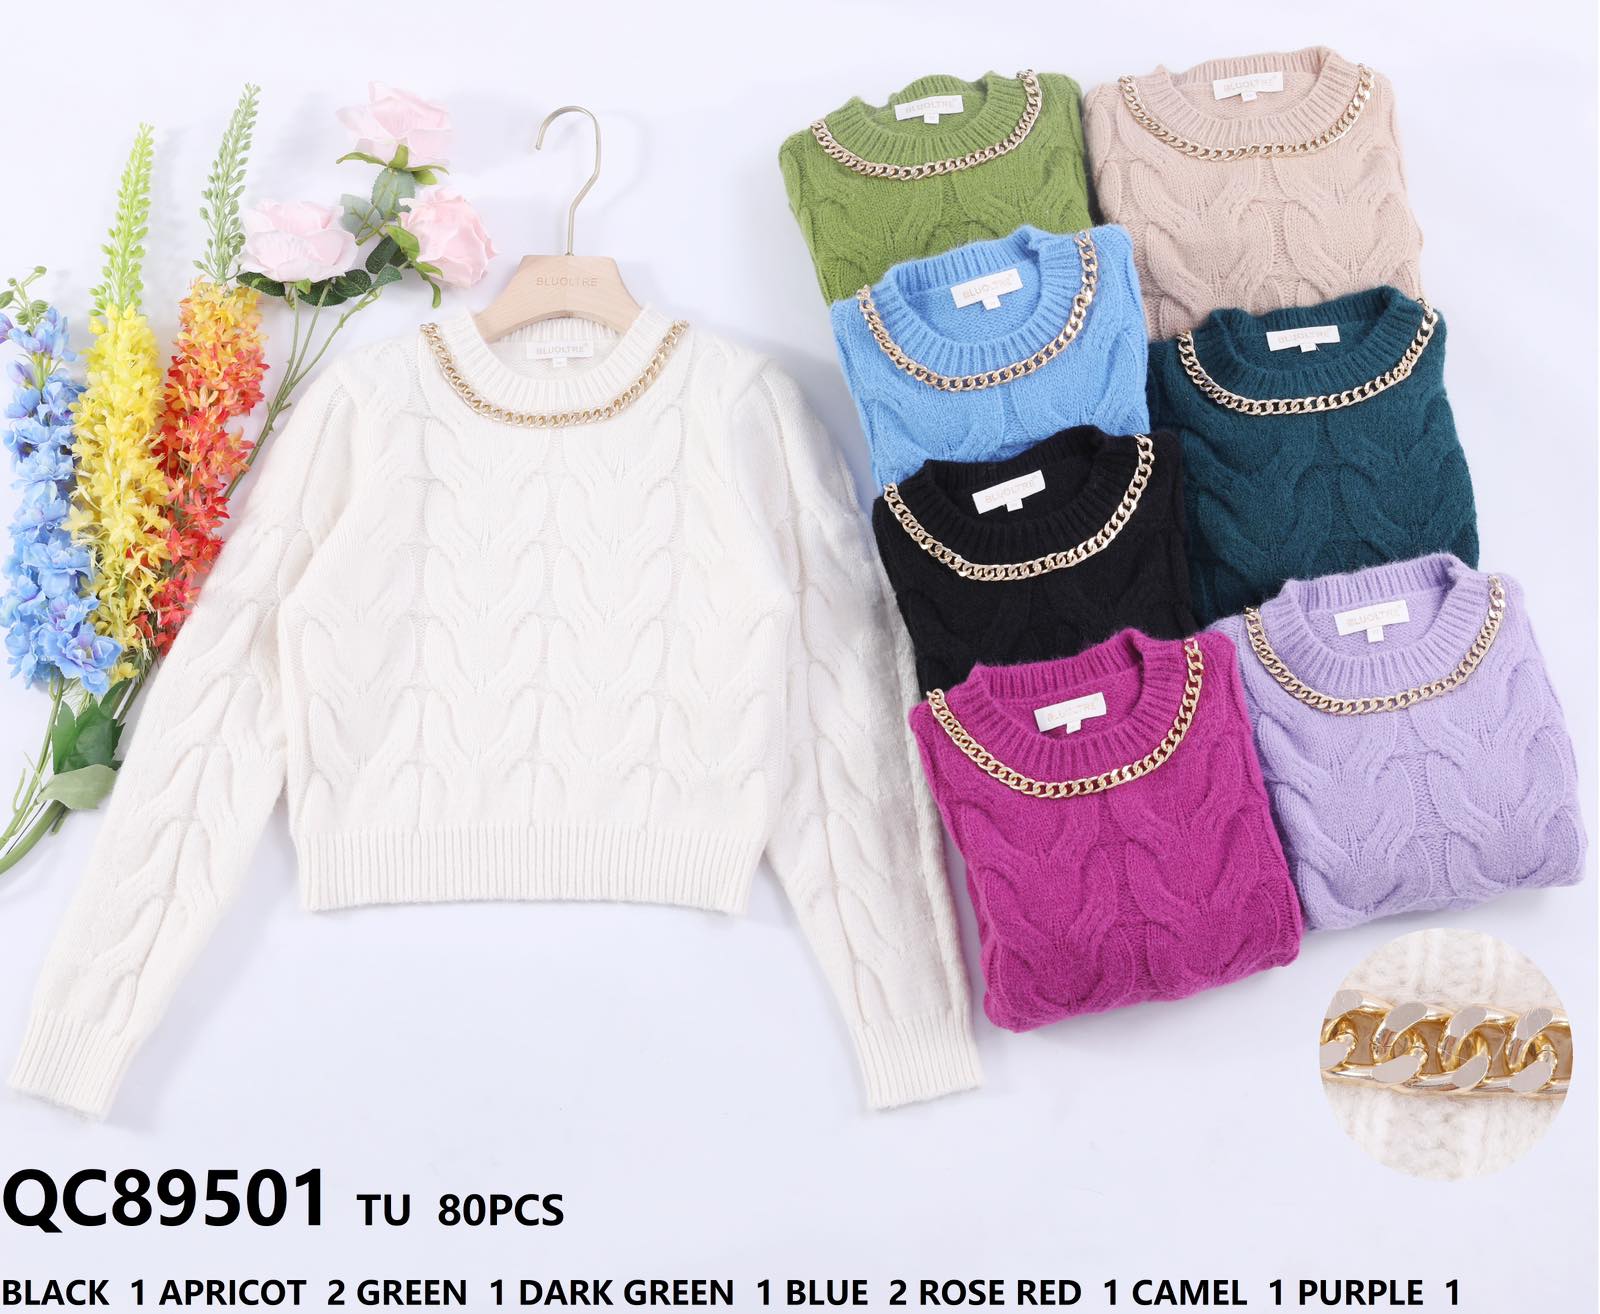 Swetry damskie (Francja produkt) Roz Standard .Mix kolor, Paszka 10 szt